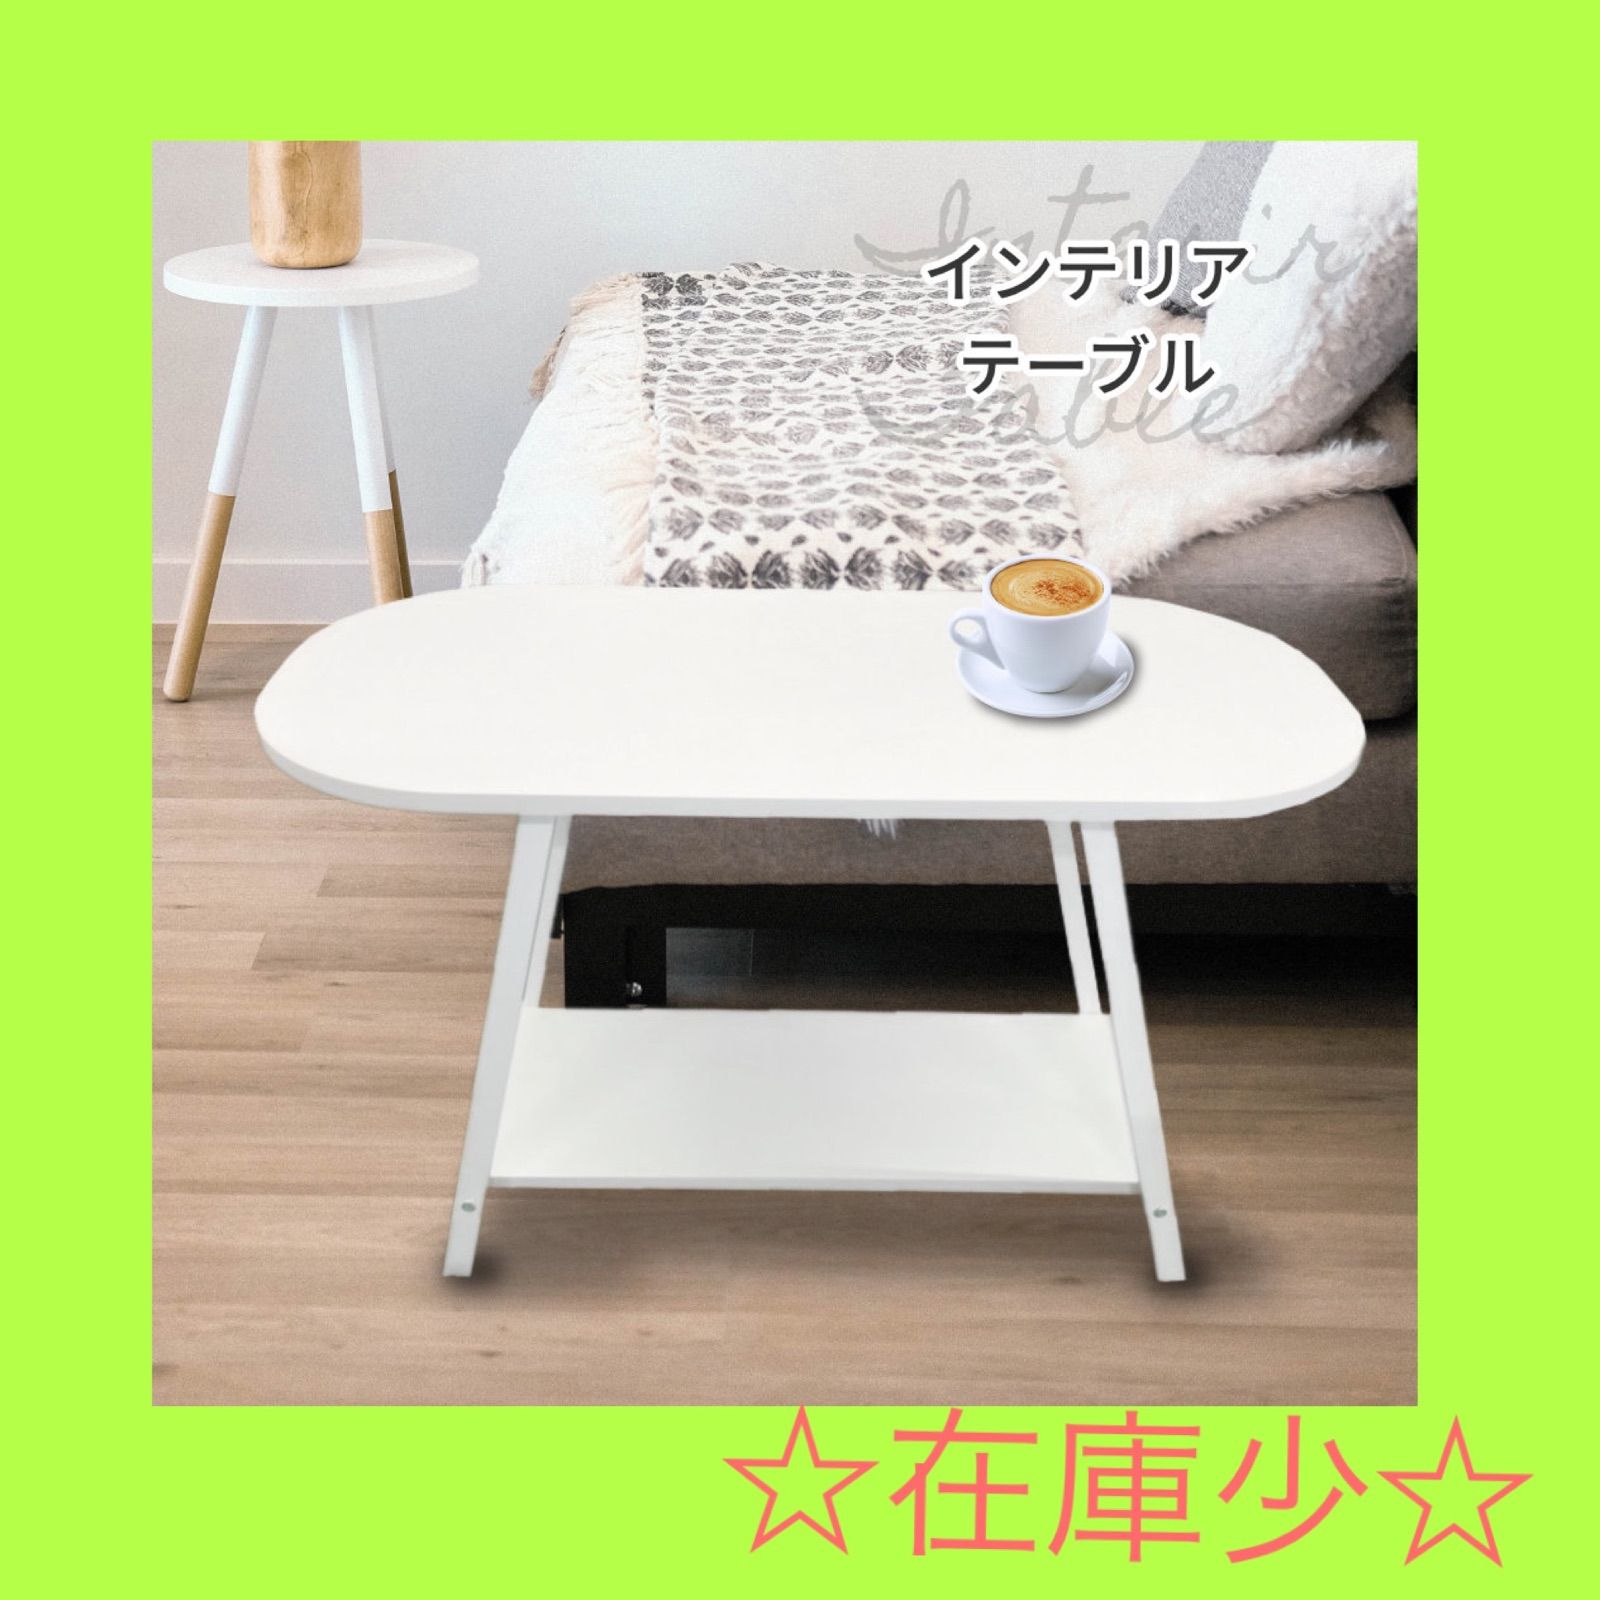 テーブル サイドテーブル ホワイト 白 北欧風 コーヒーテーブル papashi